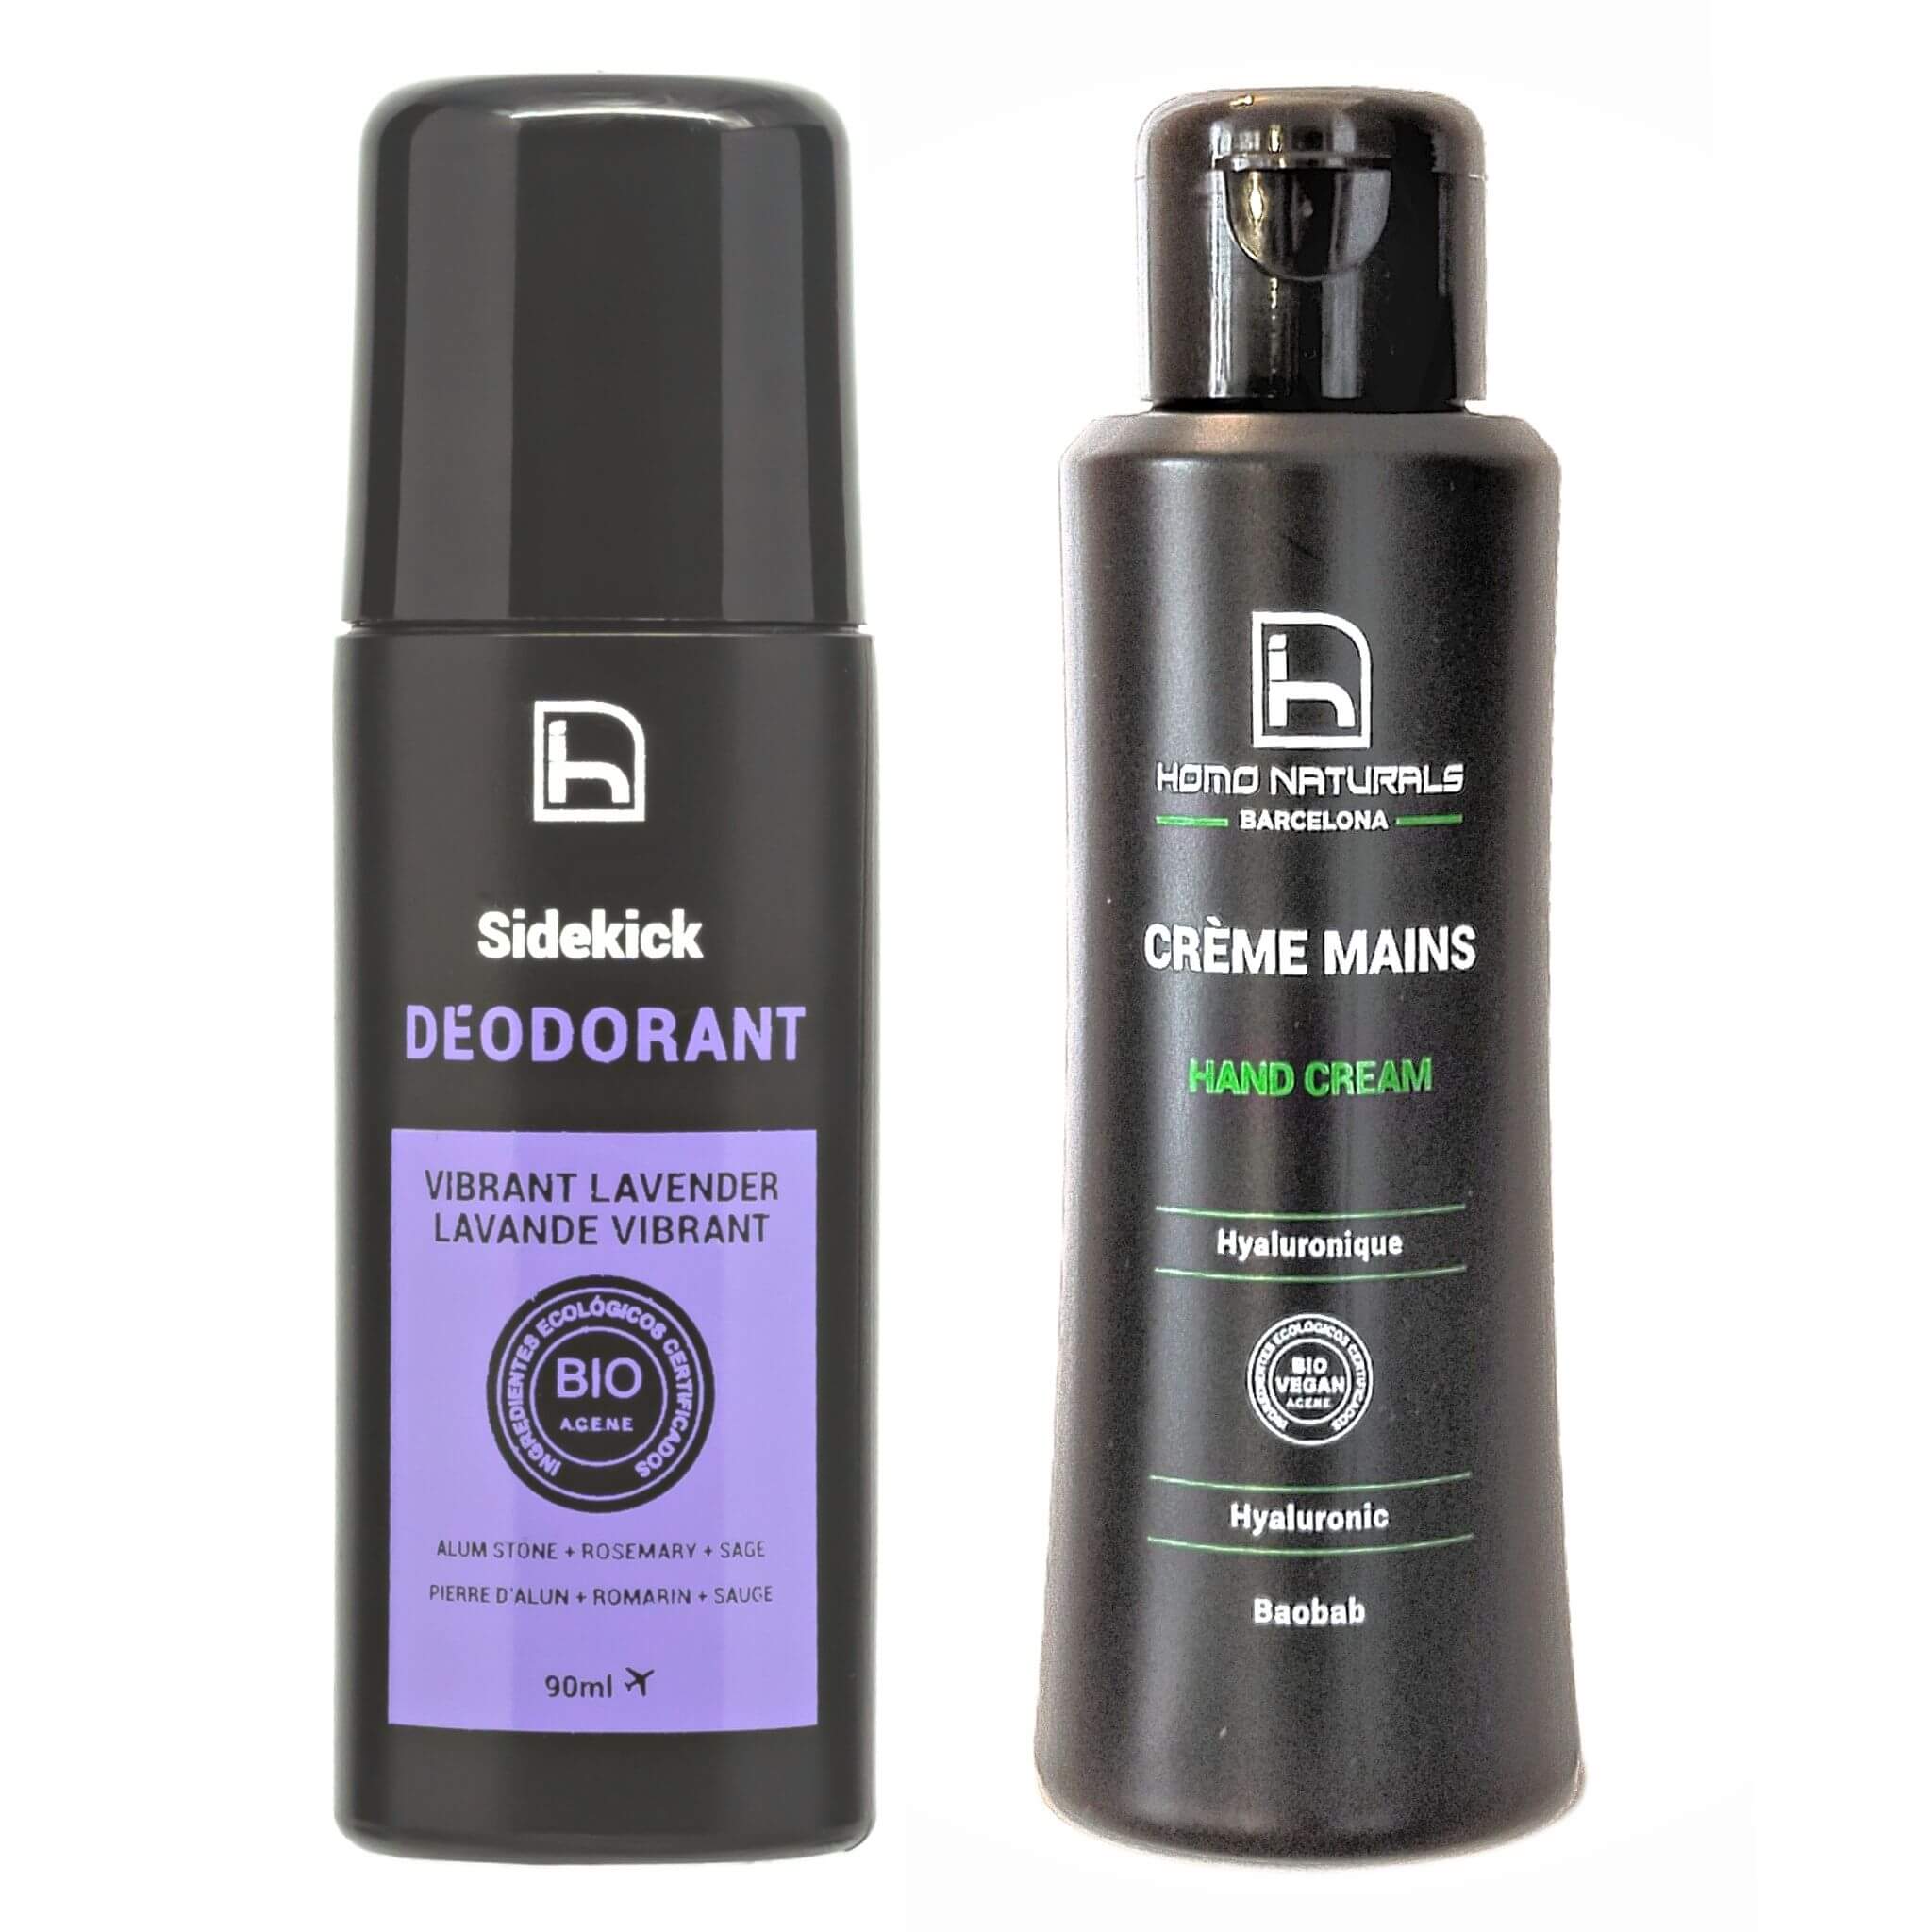 Men's natural deodorant and hand cream